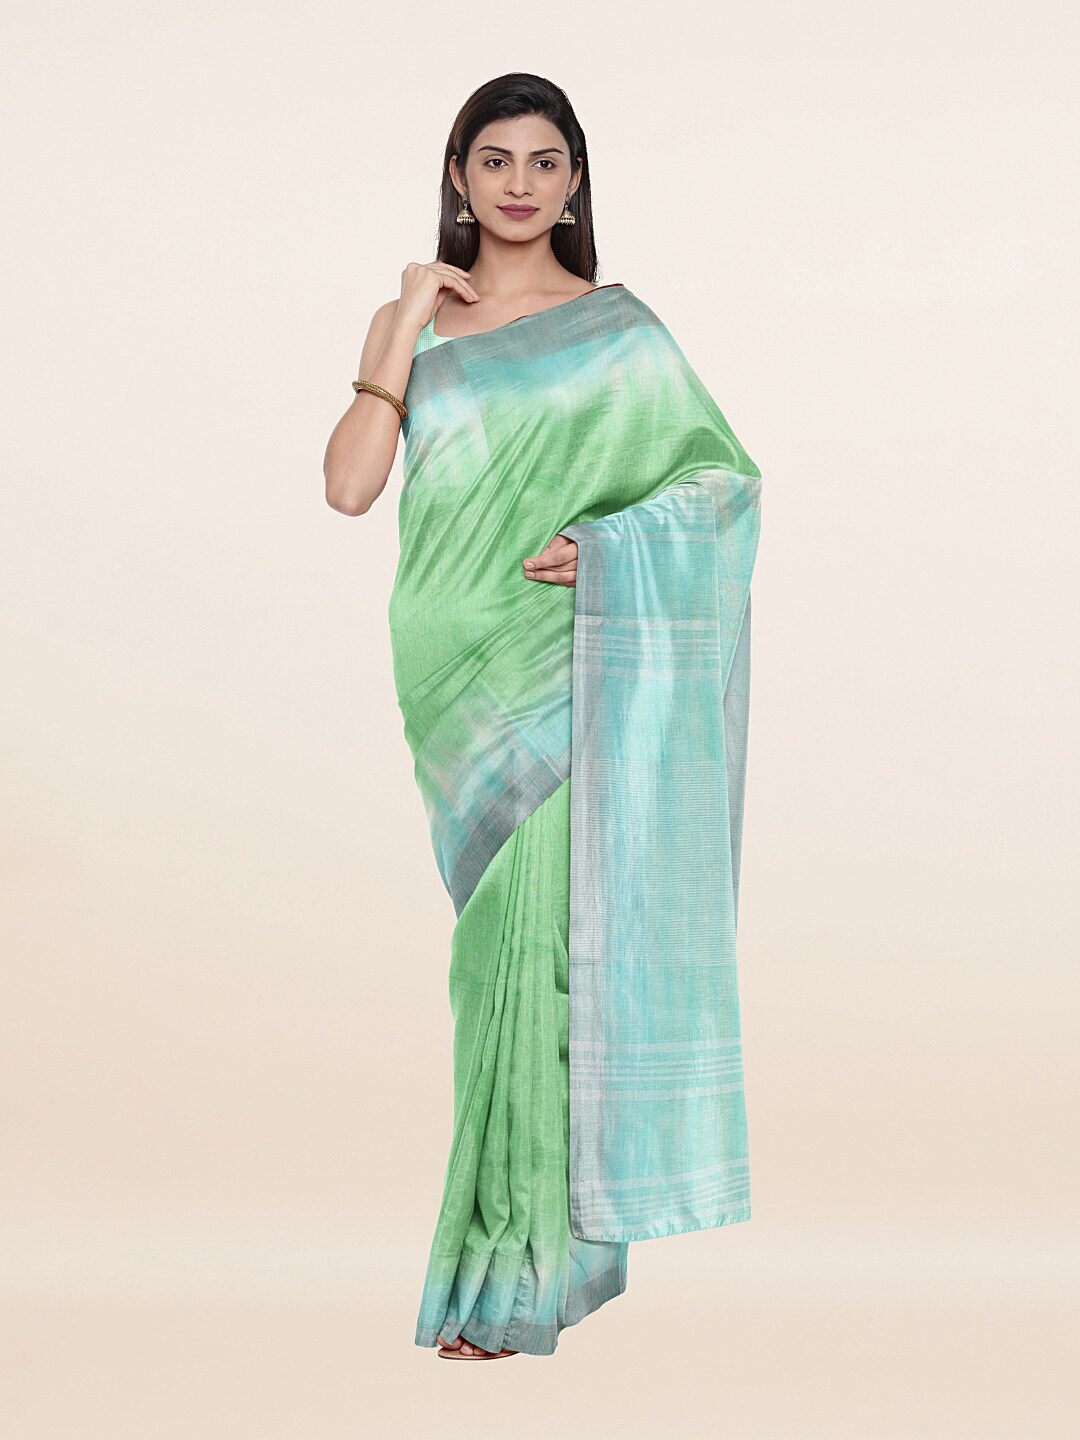 Pothys Green & Blue Ombre Zari Pure Linen Saree Price in India